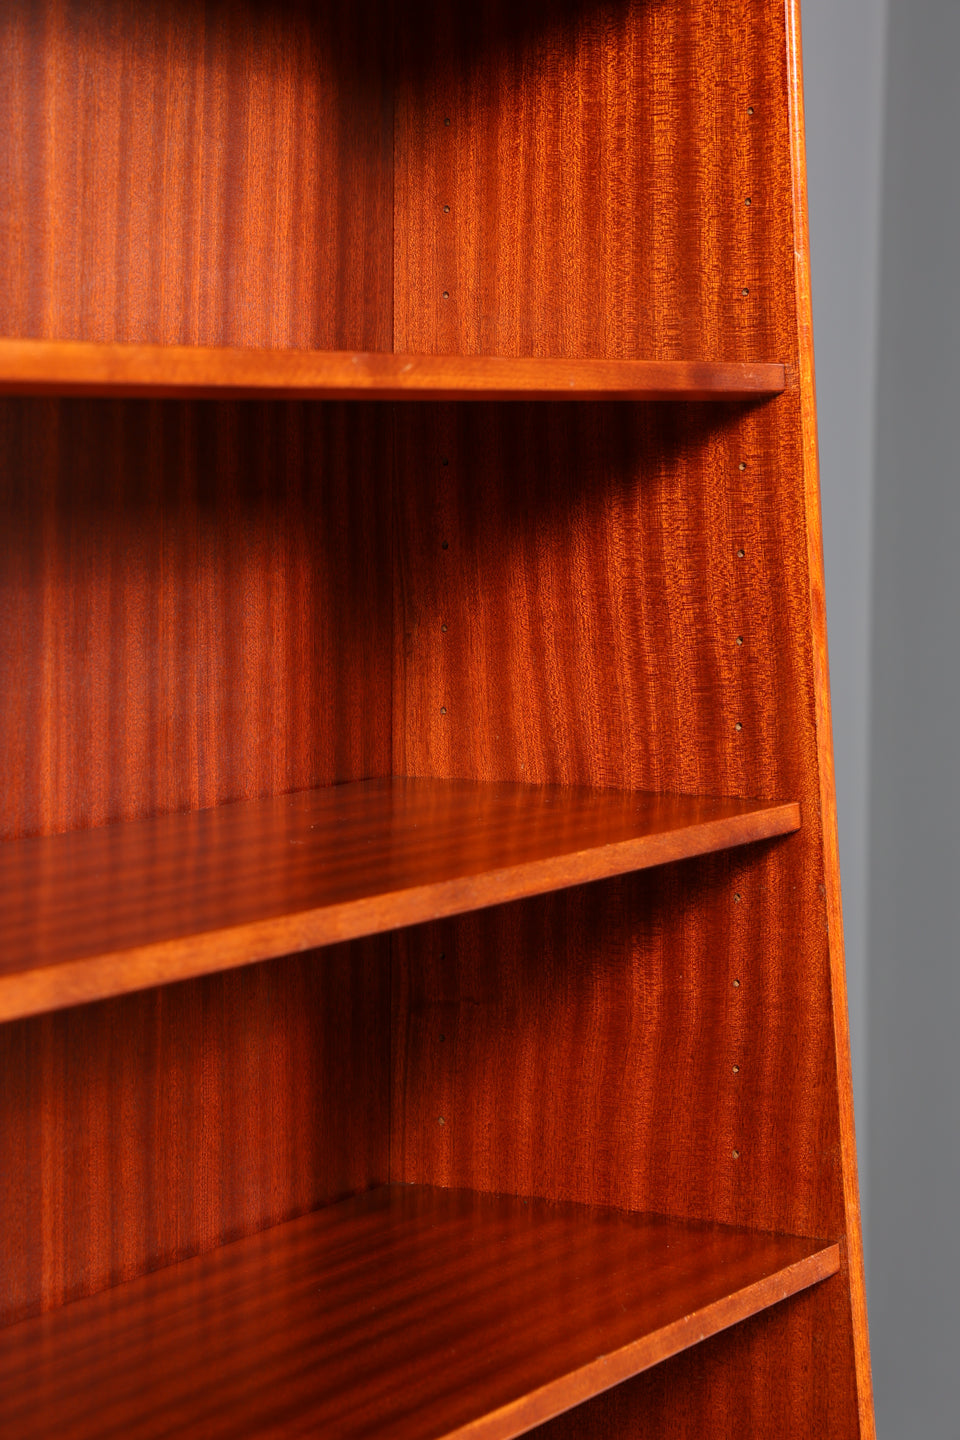 Traumhafter Mid Century Schrank Bücherregal Vintage Highboard Retro Sekretär Holz Regal 60s